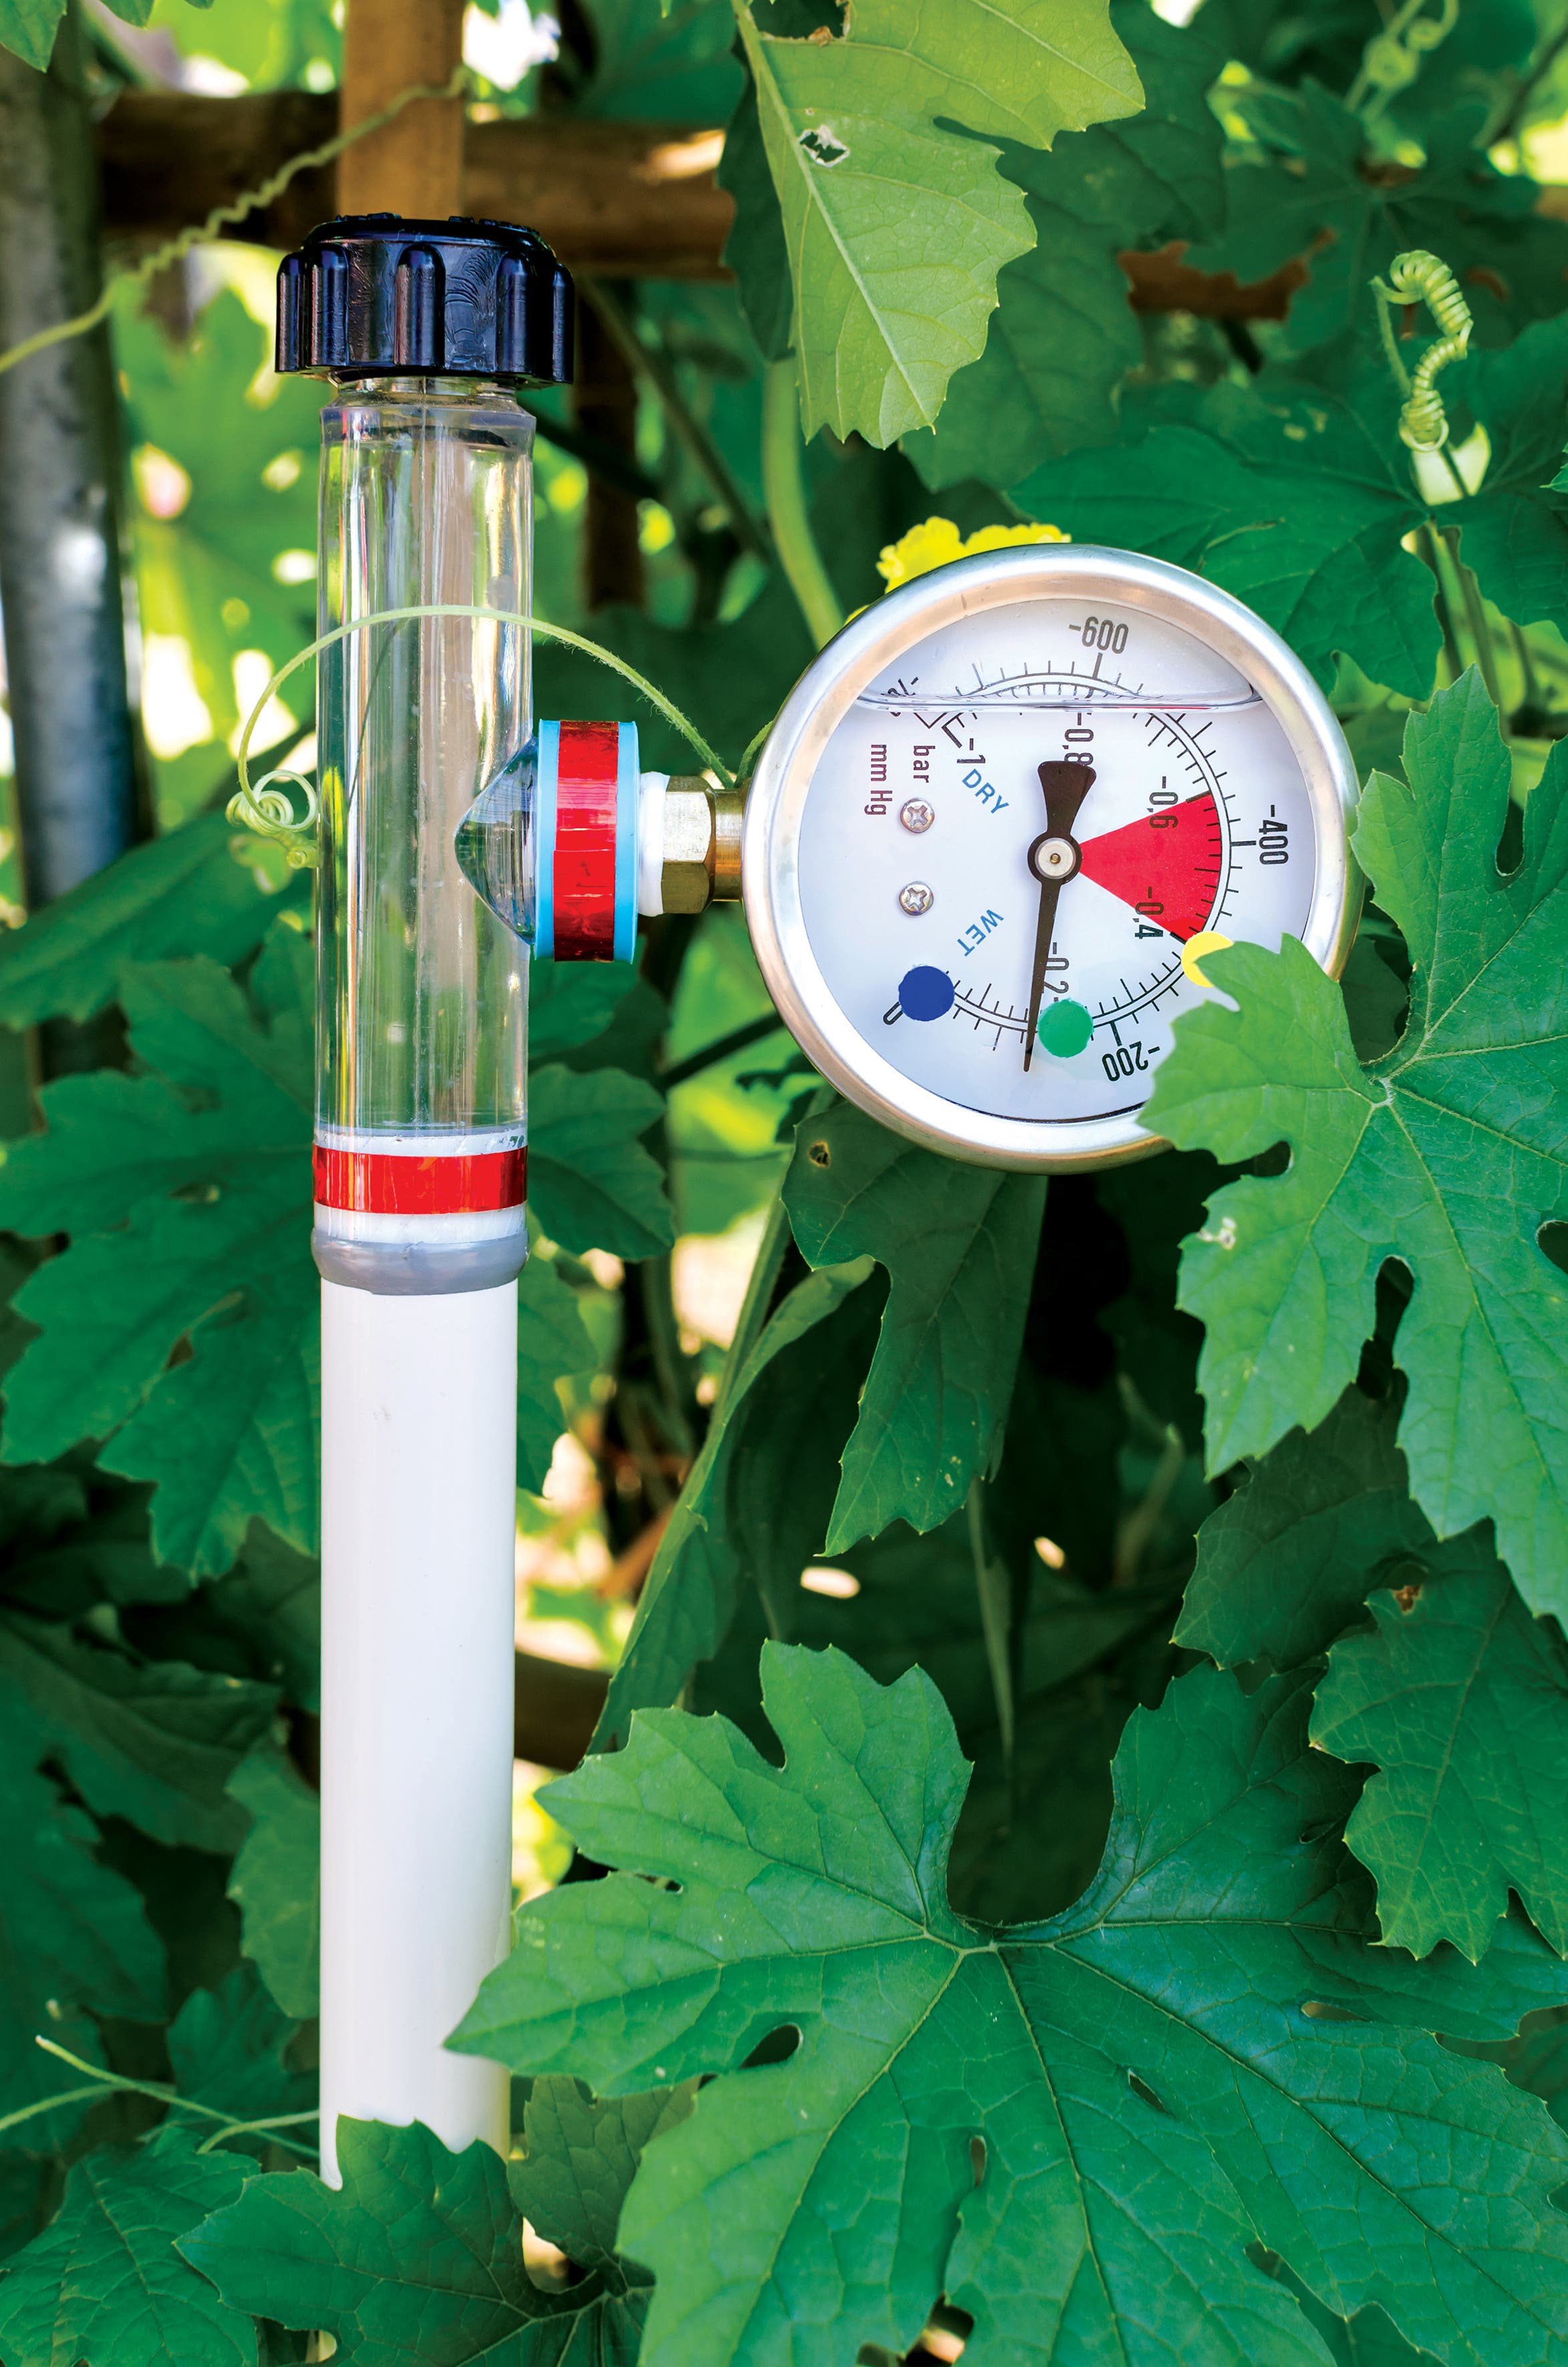 جهاز لقياس رطوبة التربة يعمل بالطاقة الشمسية.